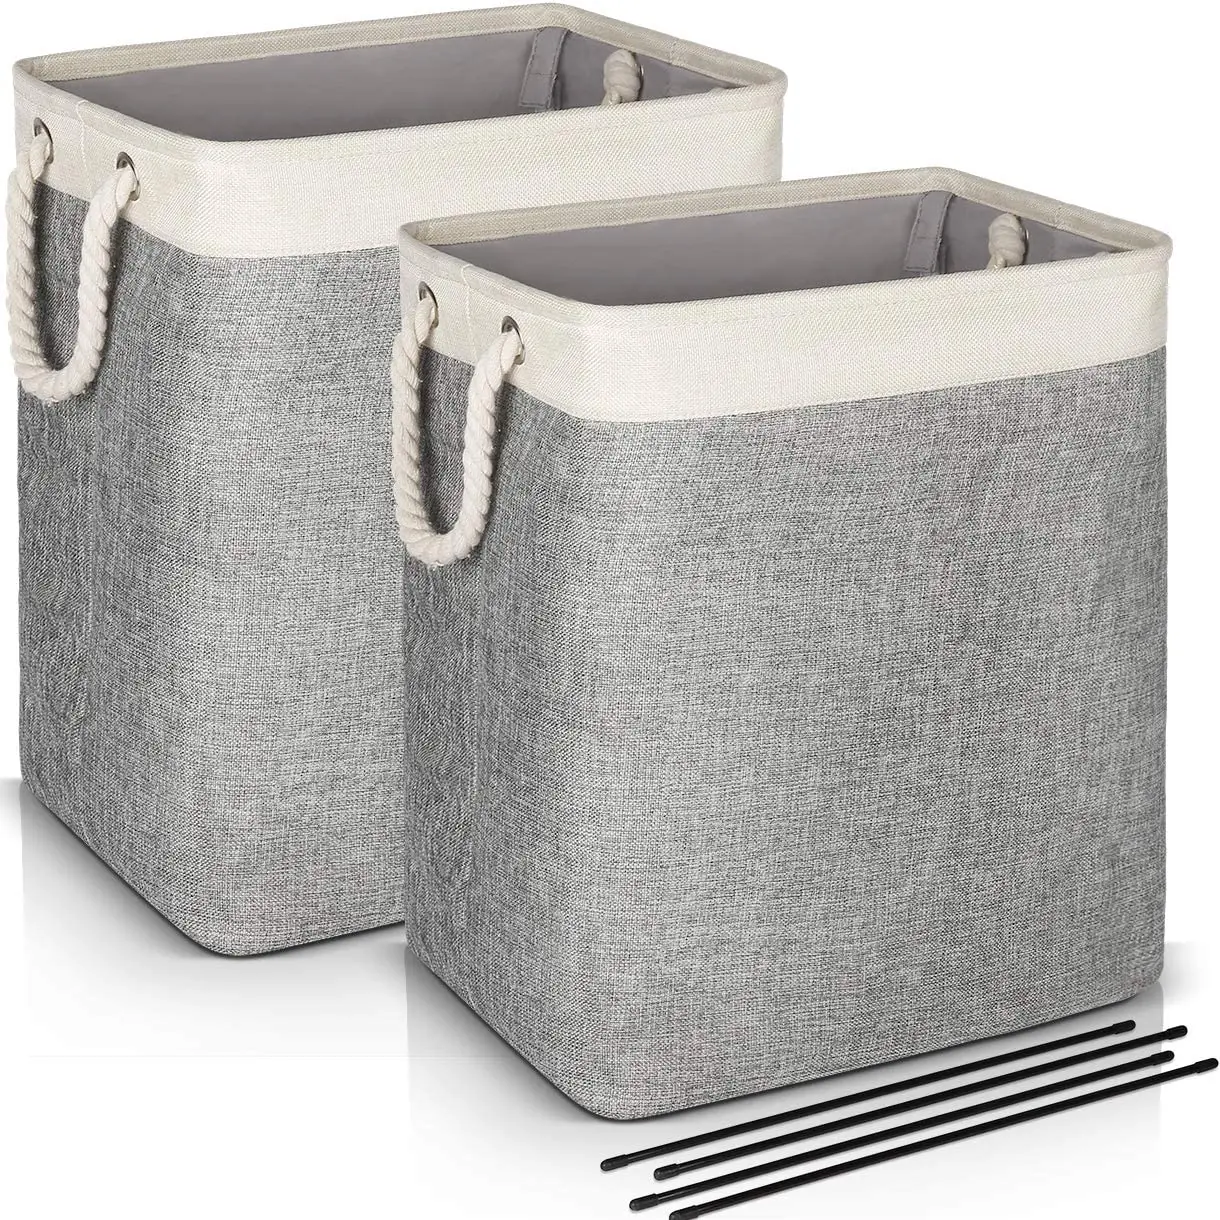 Foldable Washing Clothes Laundry Basket Toys Hamper Storage Bag Organizer Gery